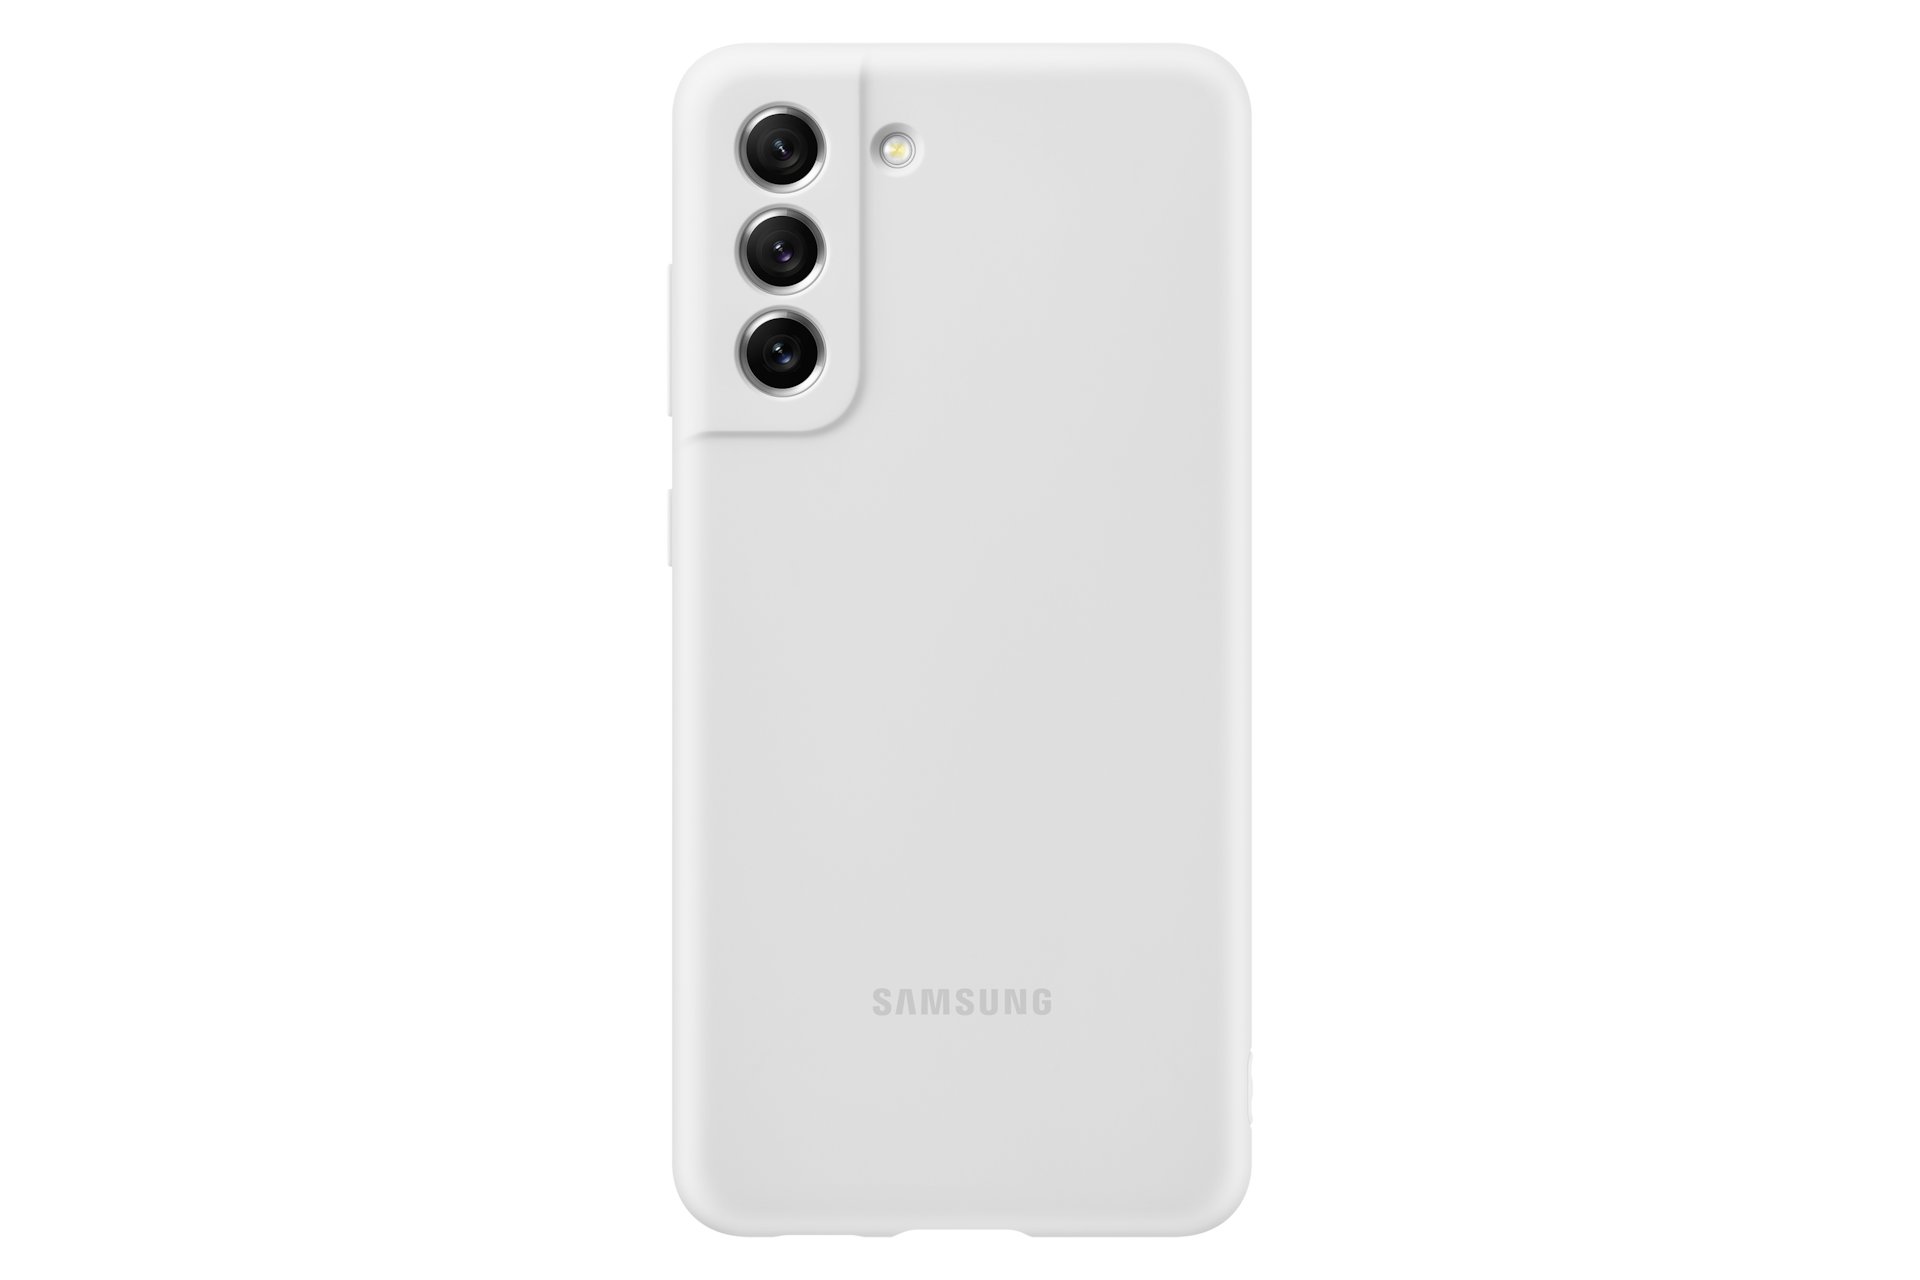 Capa protetora Galaxy S21 Ultra Silicone, com S Pen